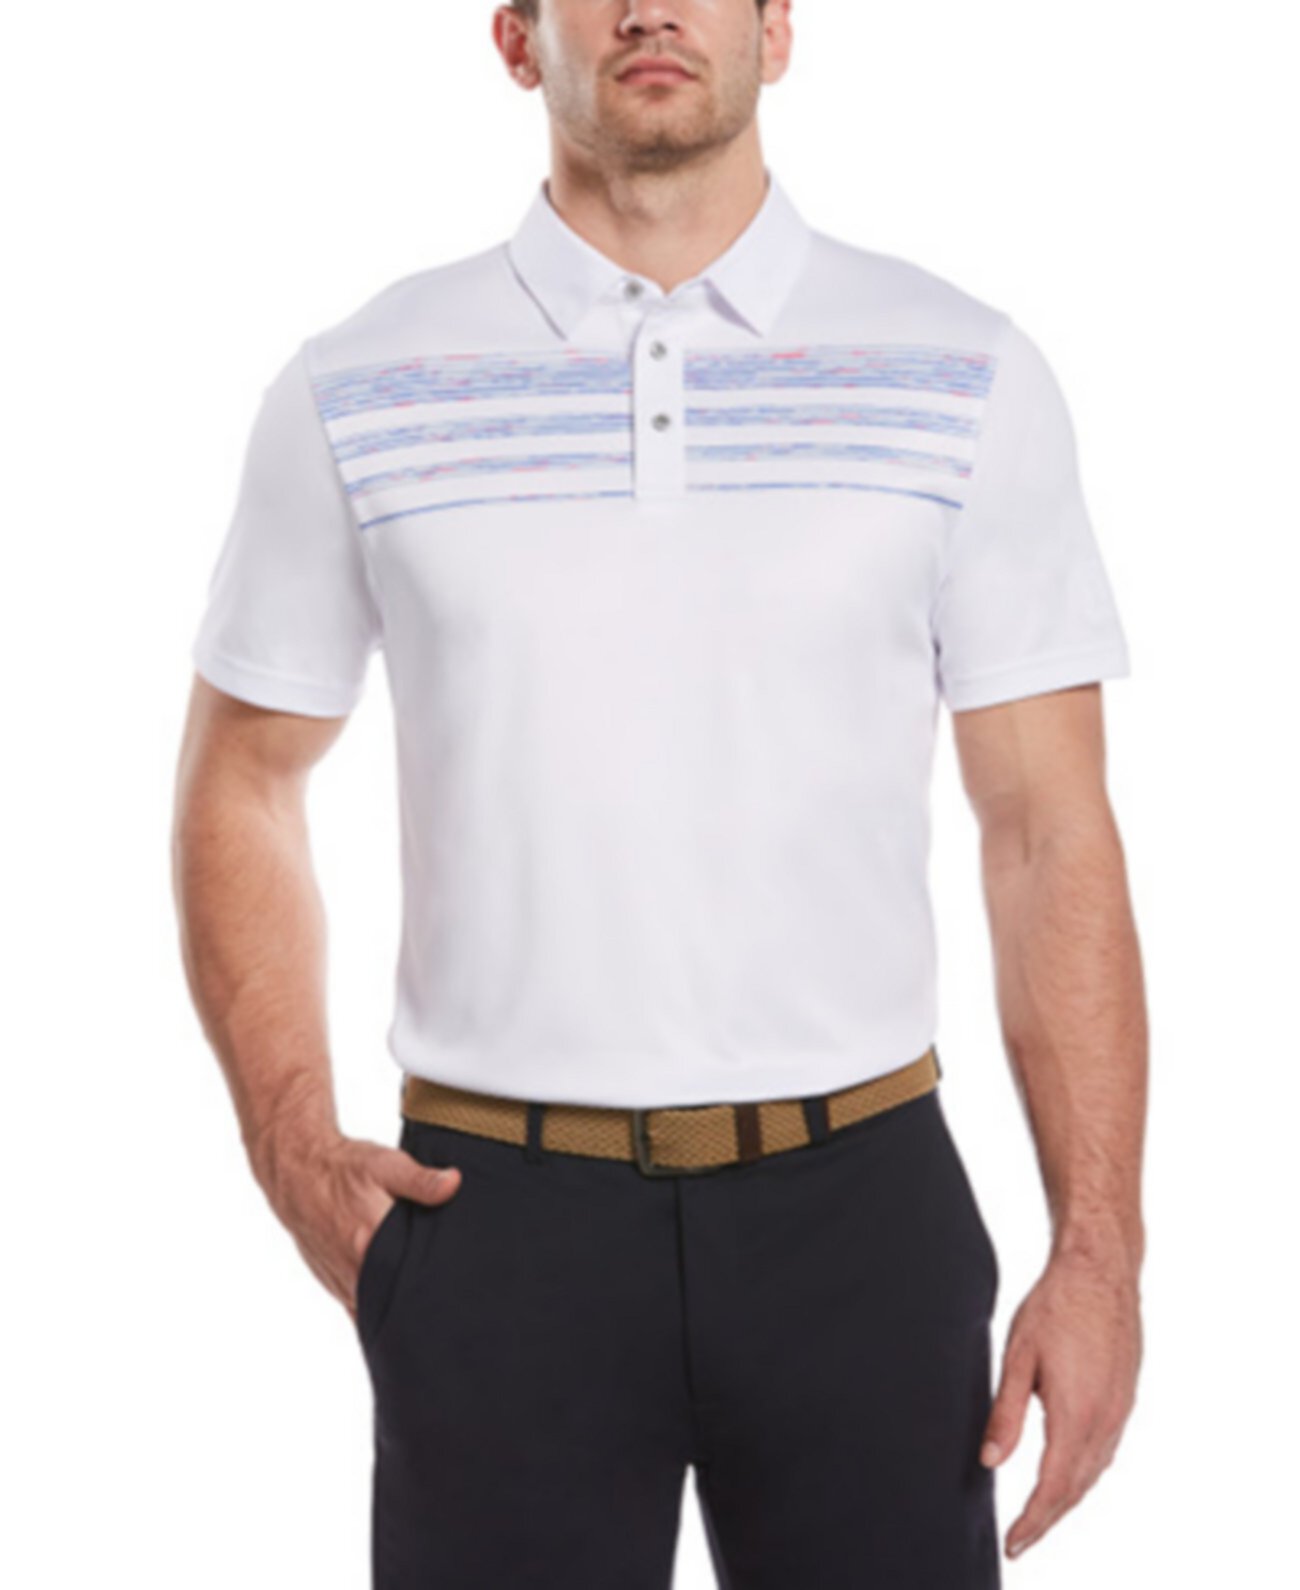 Мужская рубашка-поло, окрашенная в космос PGA TOUR